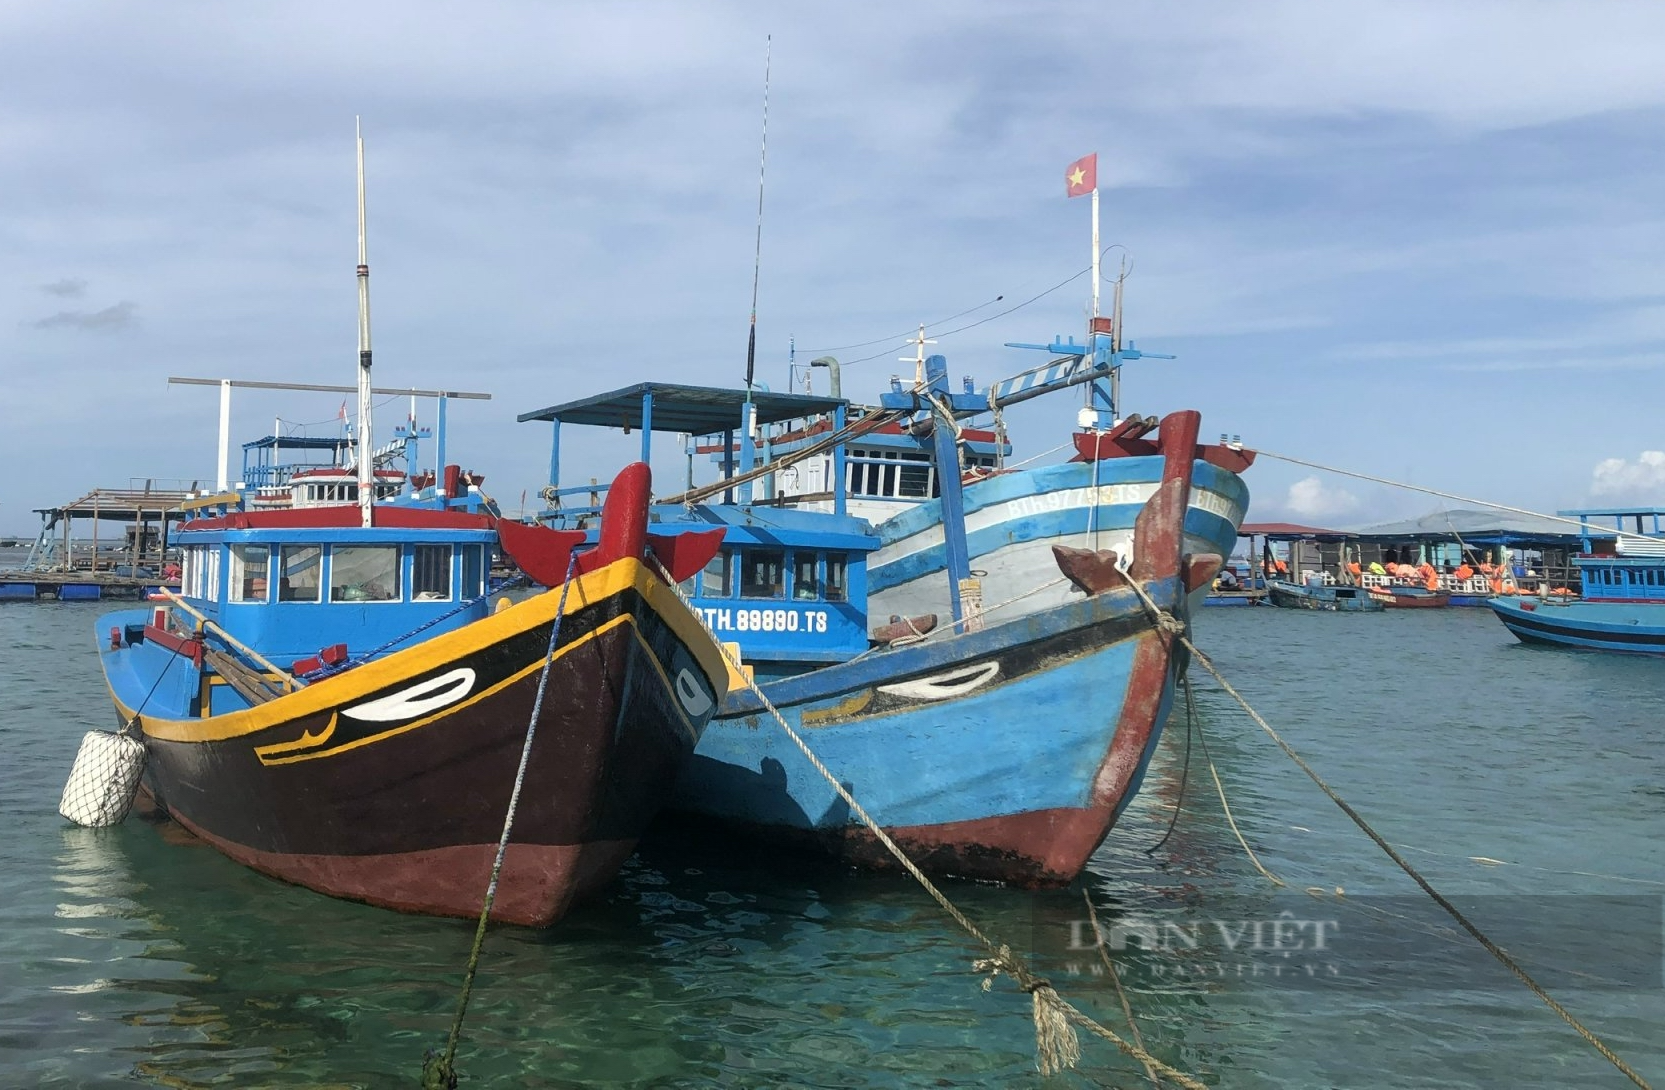 Đã cứu được 5 ngư dân trên tàu cá bị phá nước trôi trên vùng biển Phú Quý - Ảnh 2.